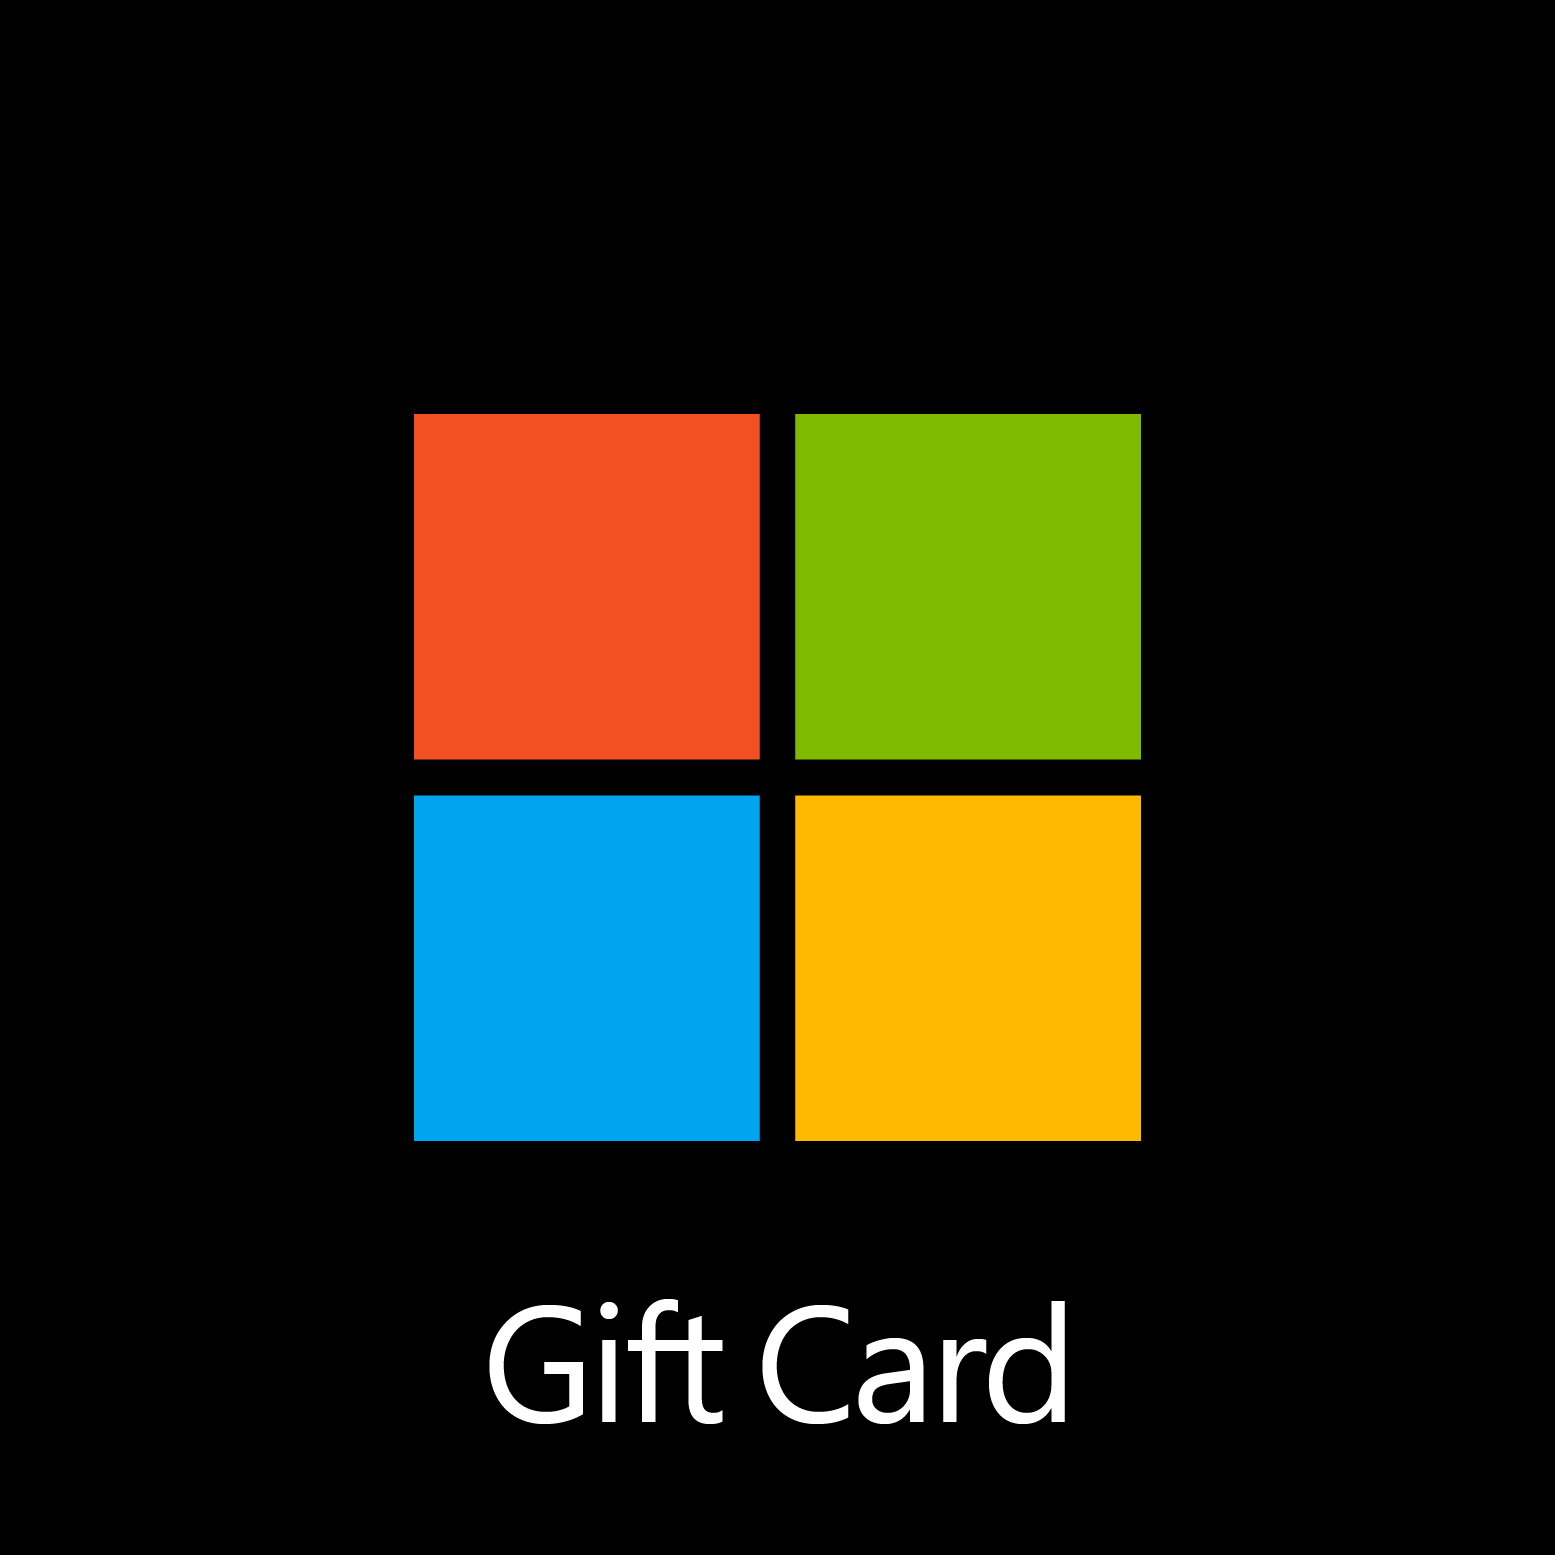 Microsoft Gift Card - Digital Code: £25.00